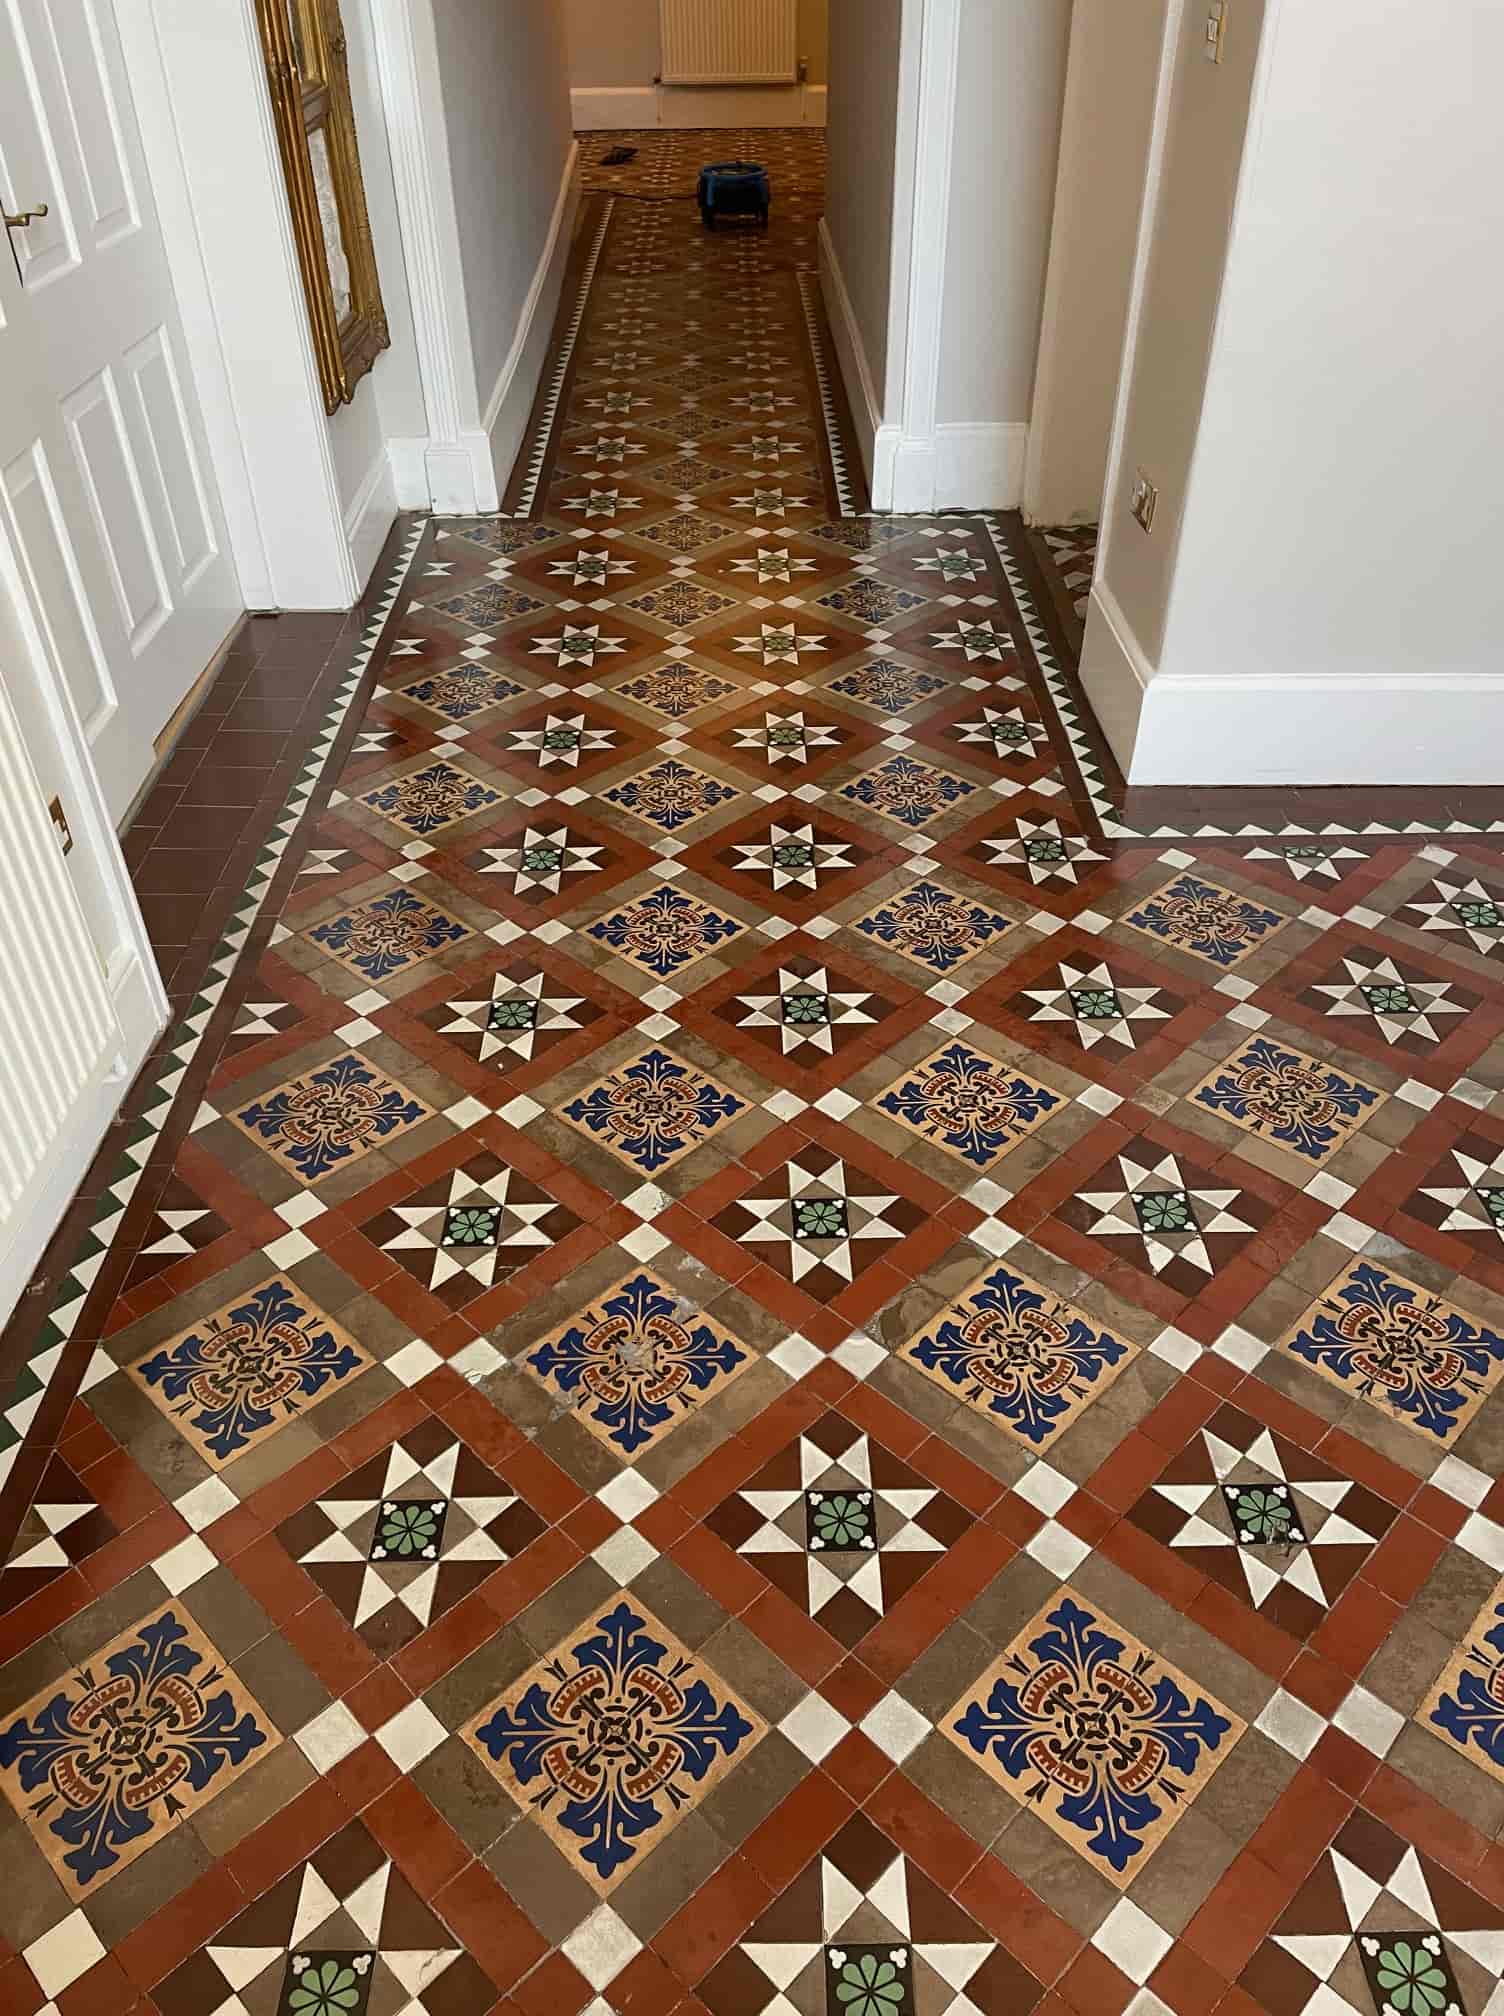 Victorian Hallway Floor After Restoration Shenstone Lichfield